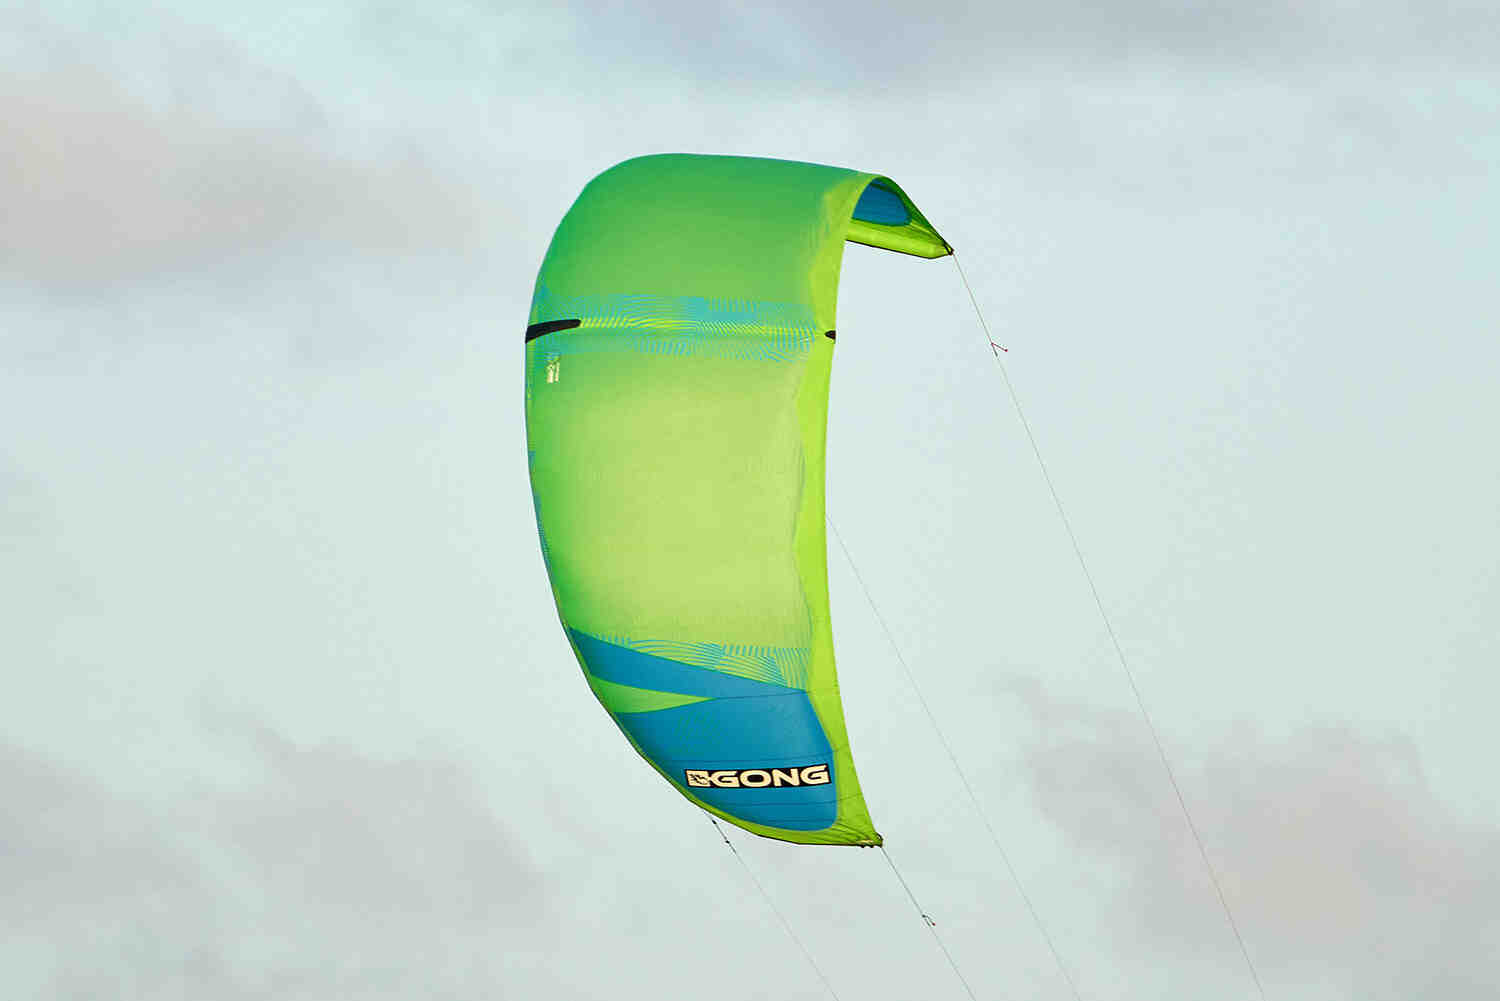 Quelle aile de kite pour le foil ?